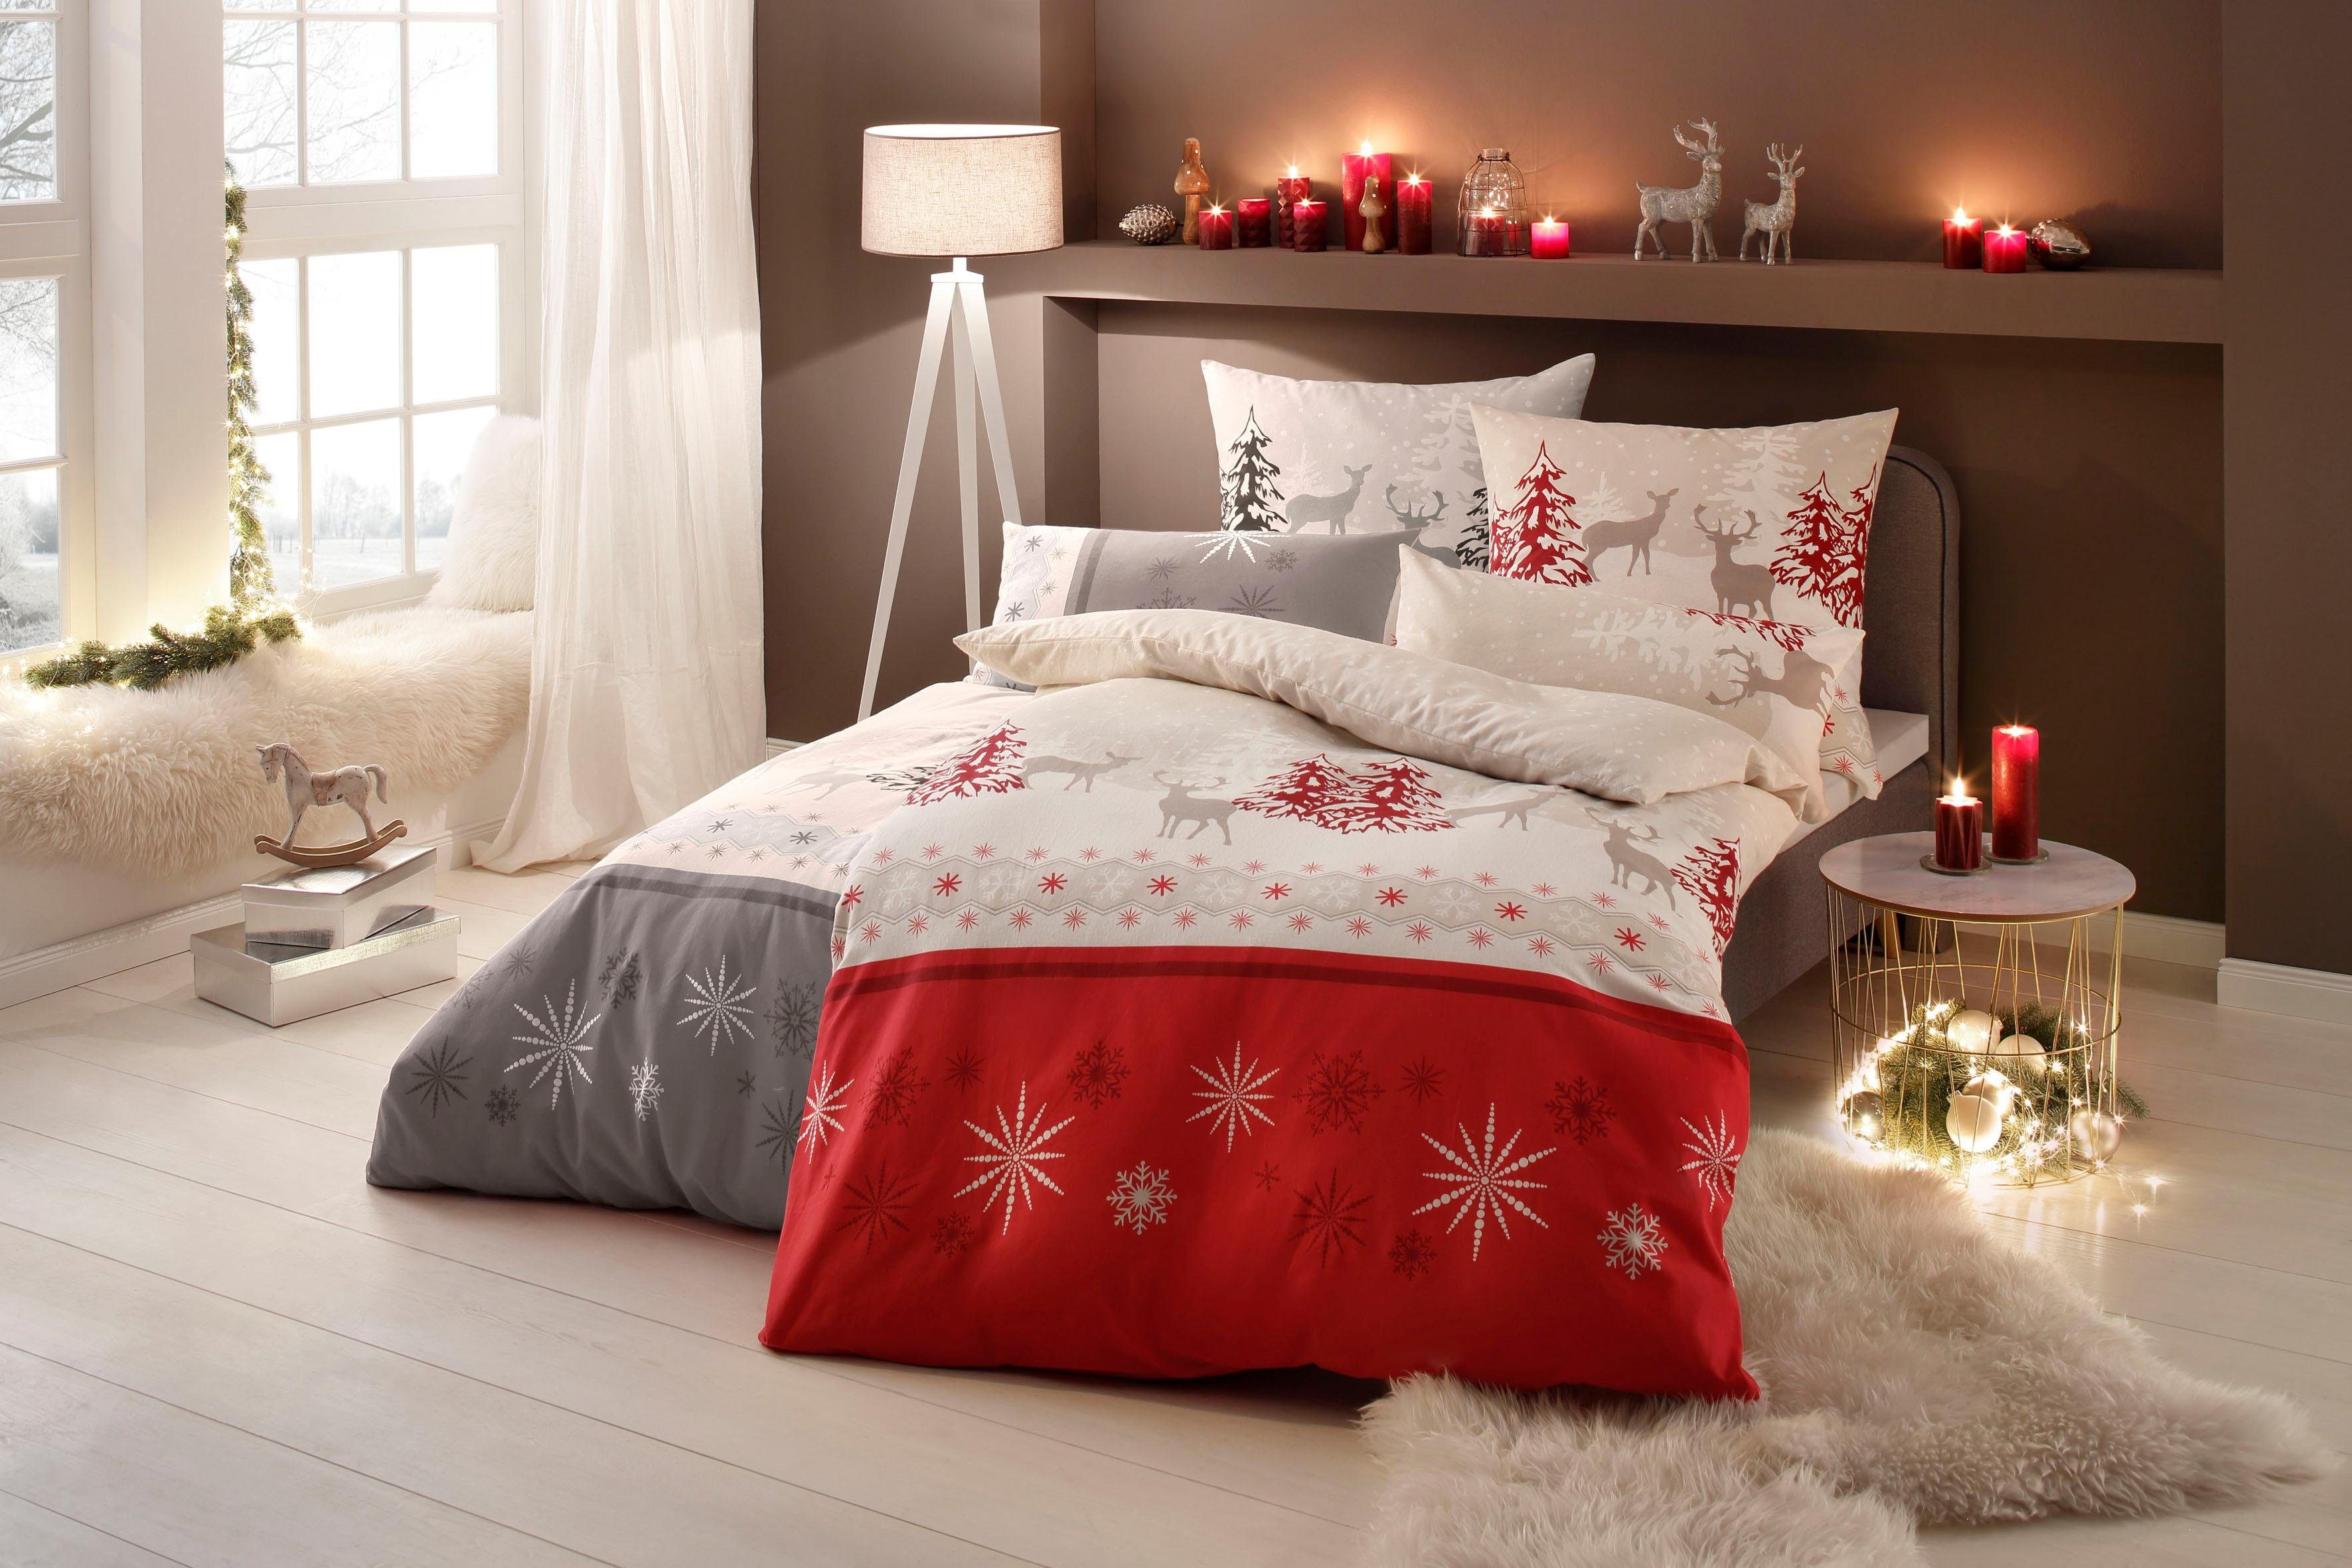 my home Overtrekset Venua dekbedovertrek kerst, dekbedovertrek winter, Öko-TEX® gecertificeerd In verschillende kwaliteiten, wintersdesign (2-delig)